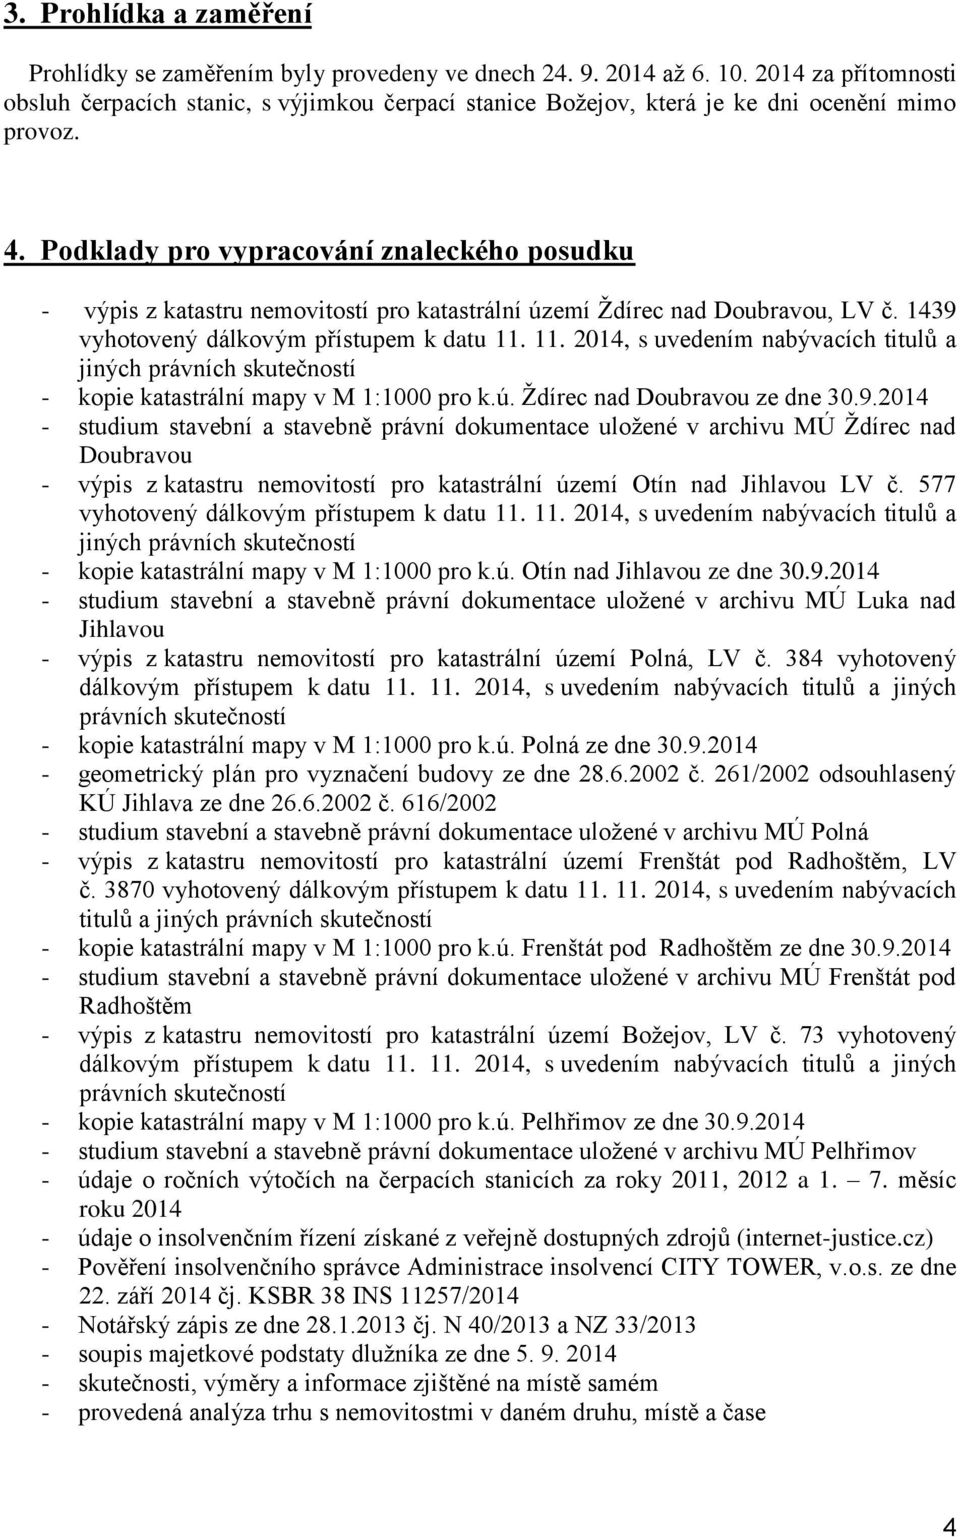 Podklady pro vypracování znaleckého posudku - výpis z katastru nemovitostí pro katastrální území Ždírec nad Doubravou, LV č. 1439 vyhotovený dálkovým přístupem k datu 11.